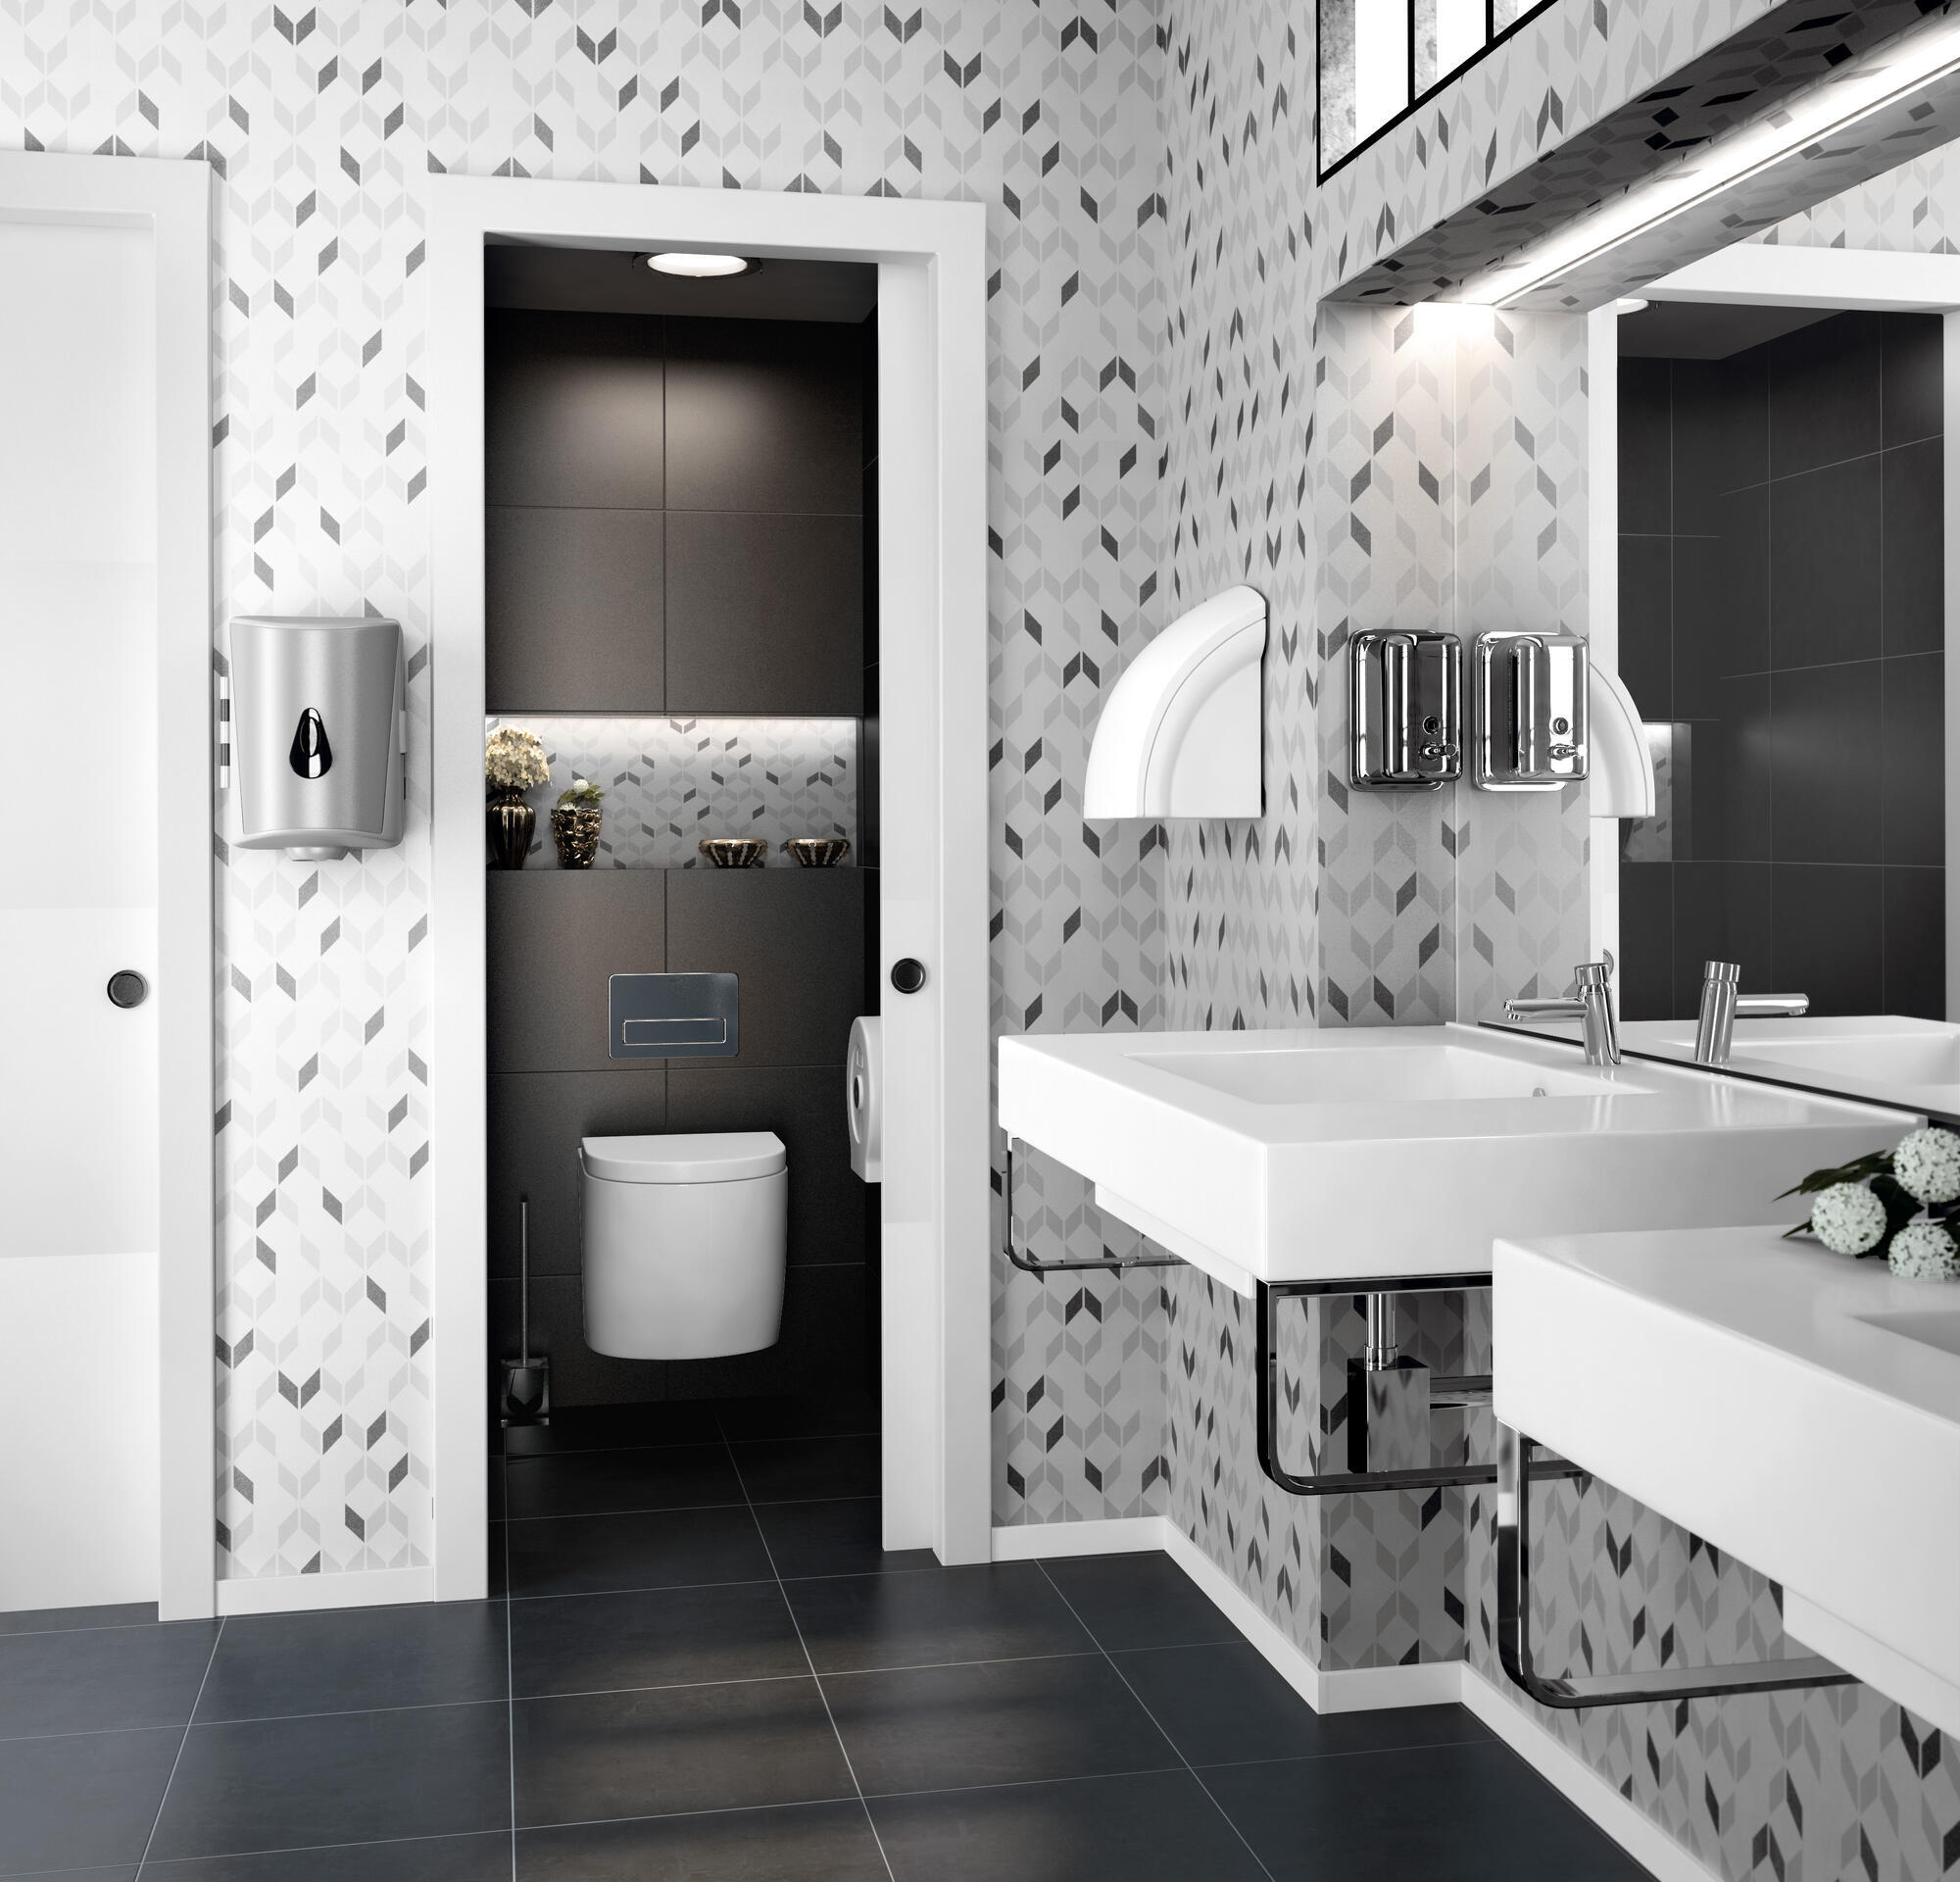 Reforma en el baño sin obras: 5 azulejos adhesivos de Leroy Merlin para un  baño de revista a partir de 20 €